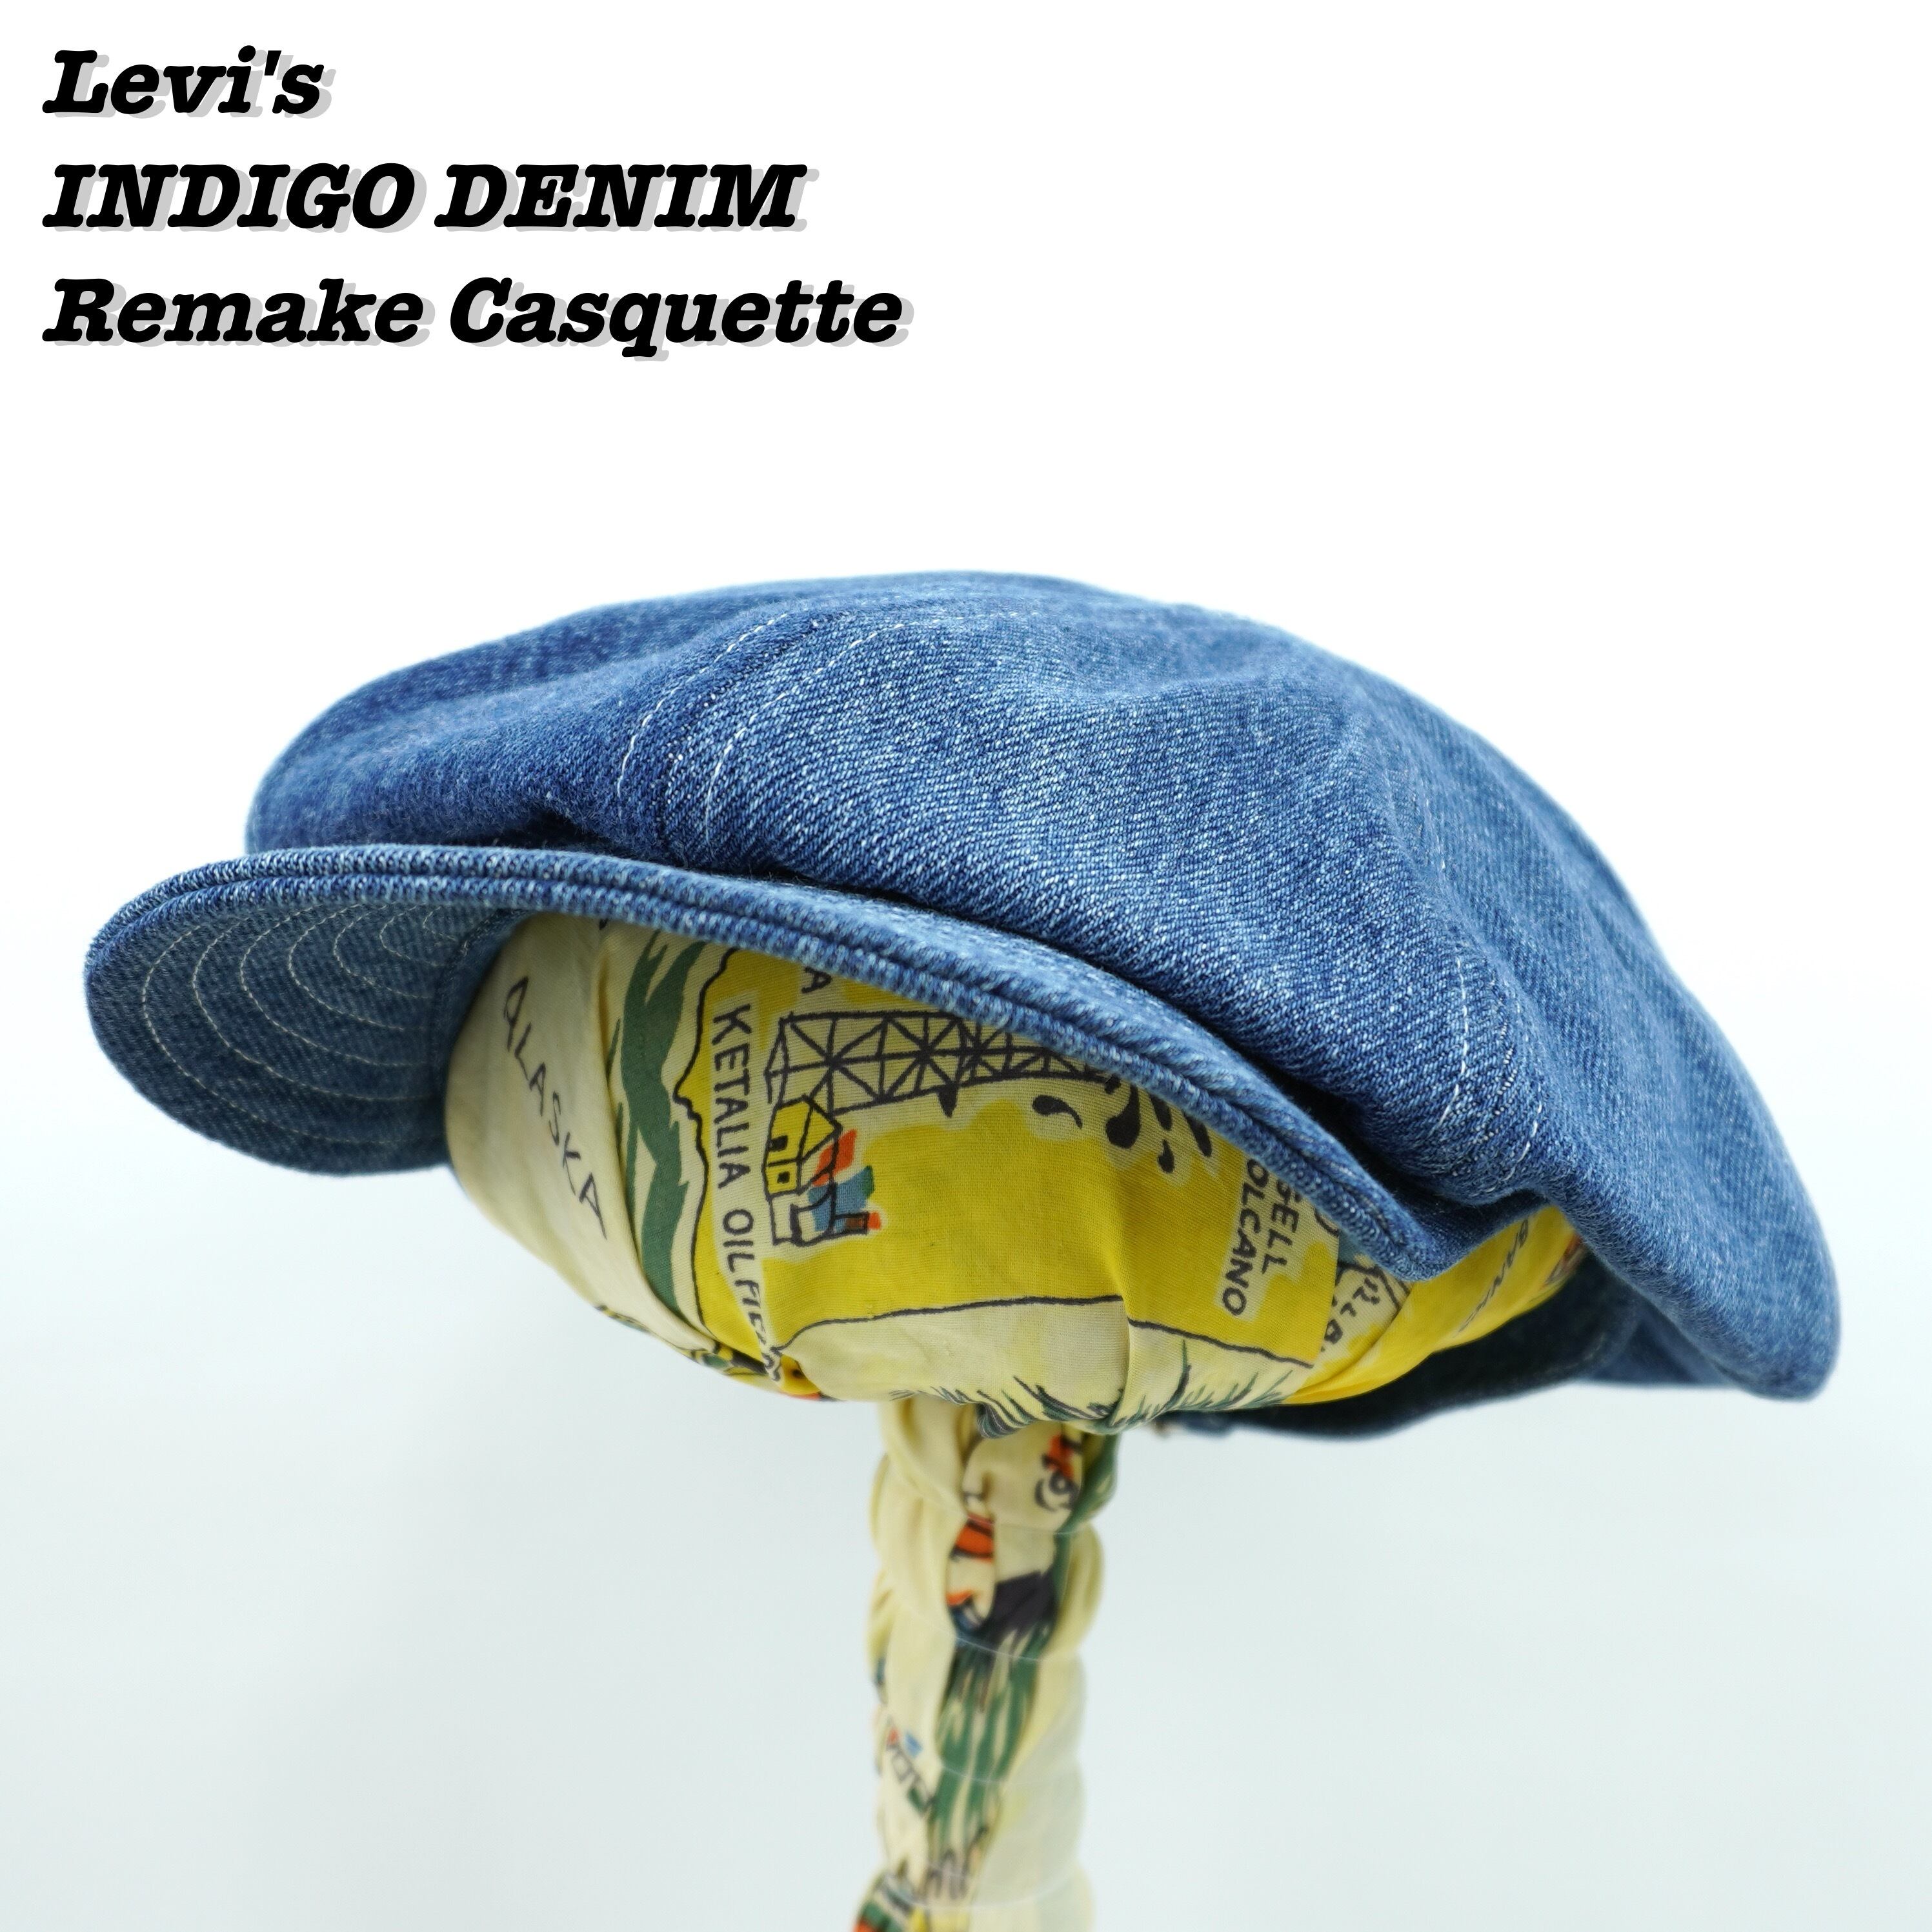 Levi's Indigo Denim Remake Casquette R090 Loki VintageUsed